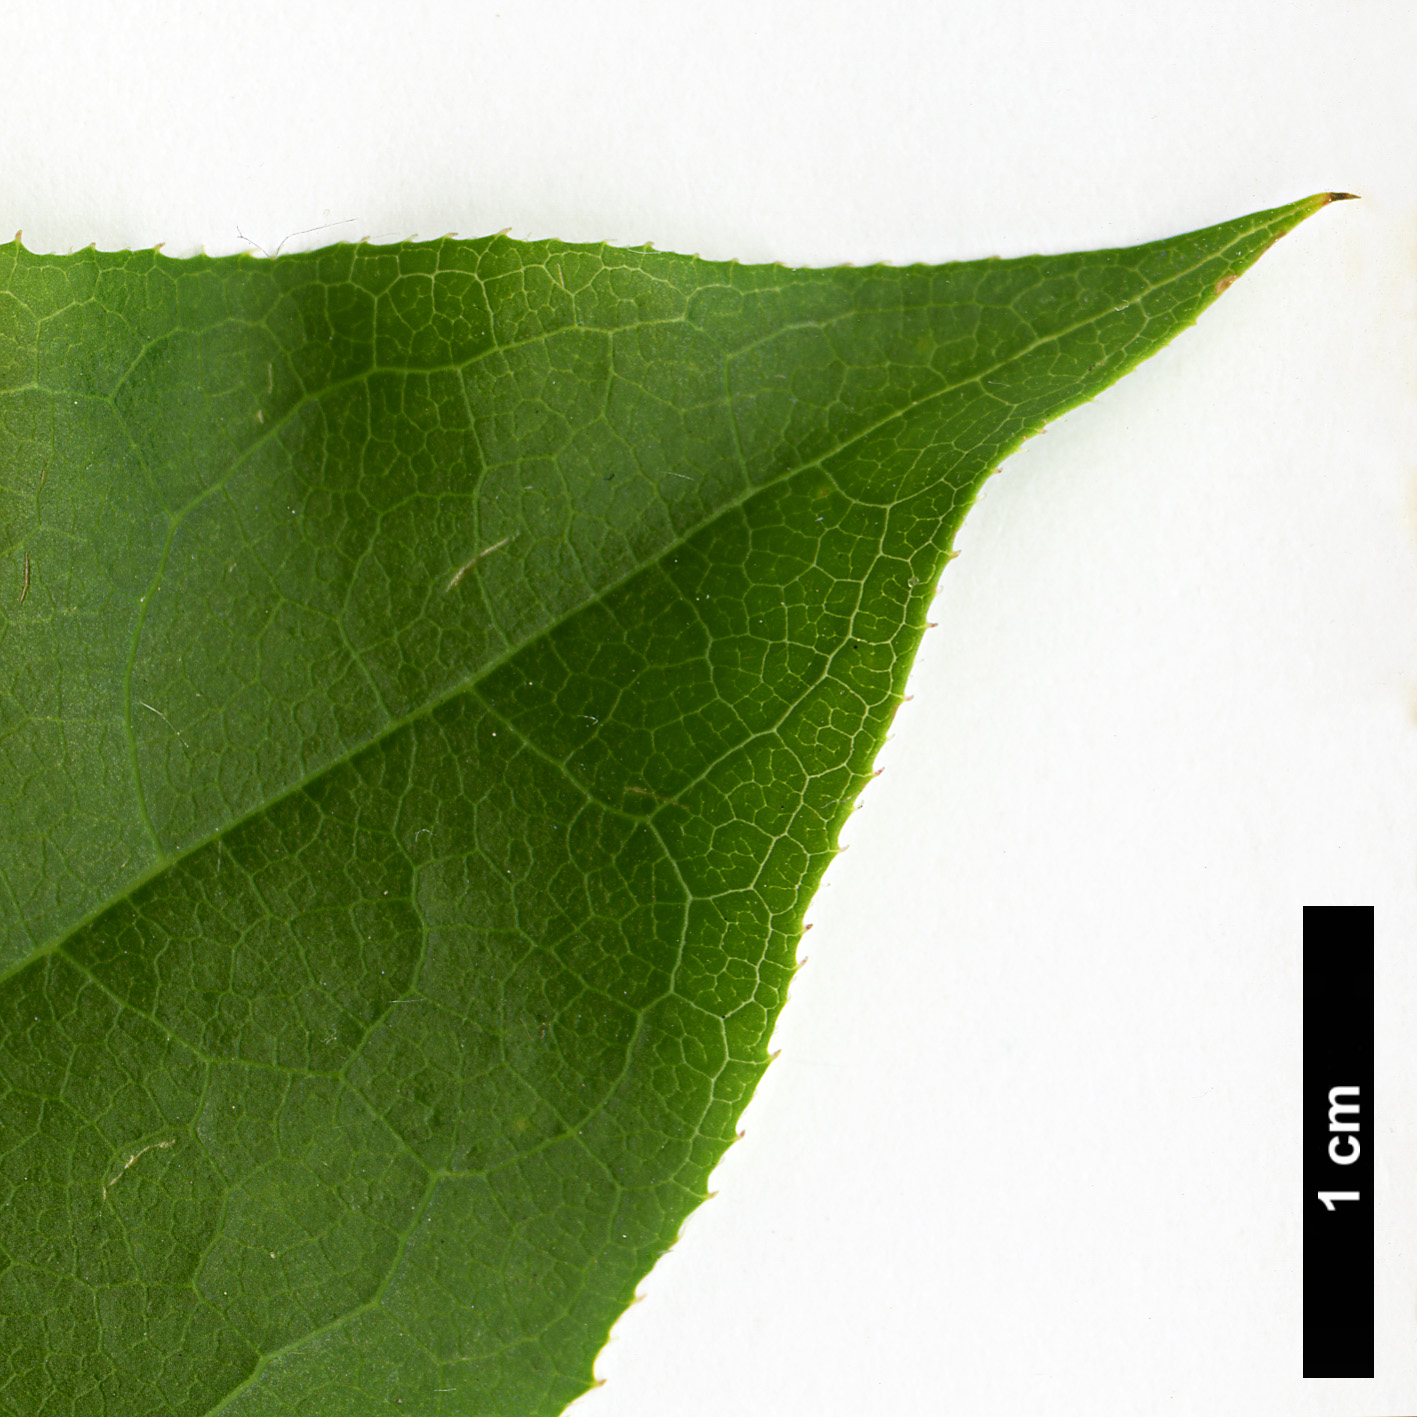 High resolution image: Family: Ericaceae - Genus: Oxydendrum - Taxon: arboreum